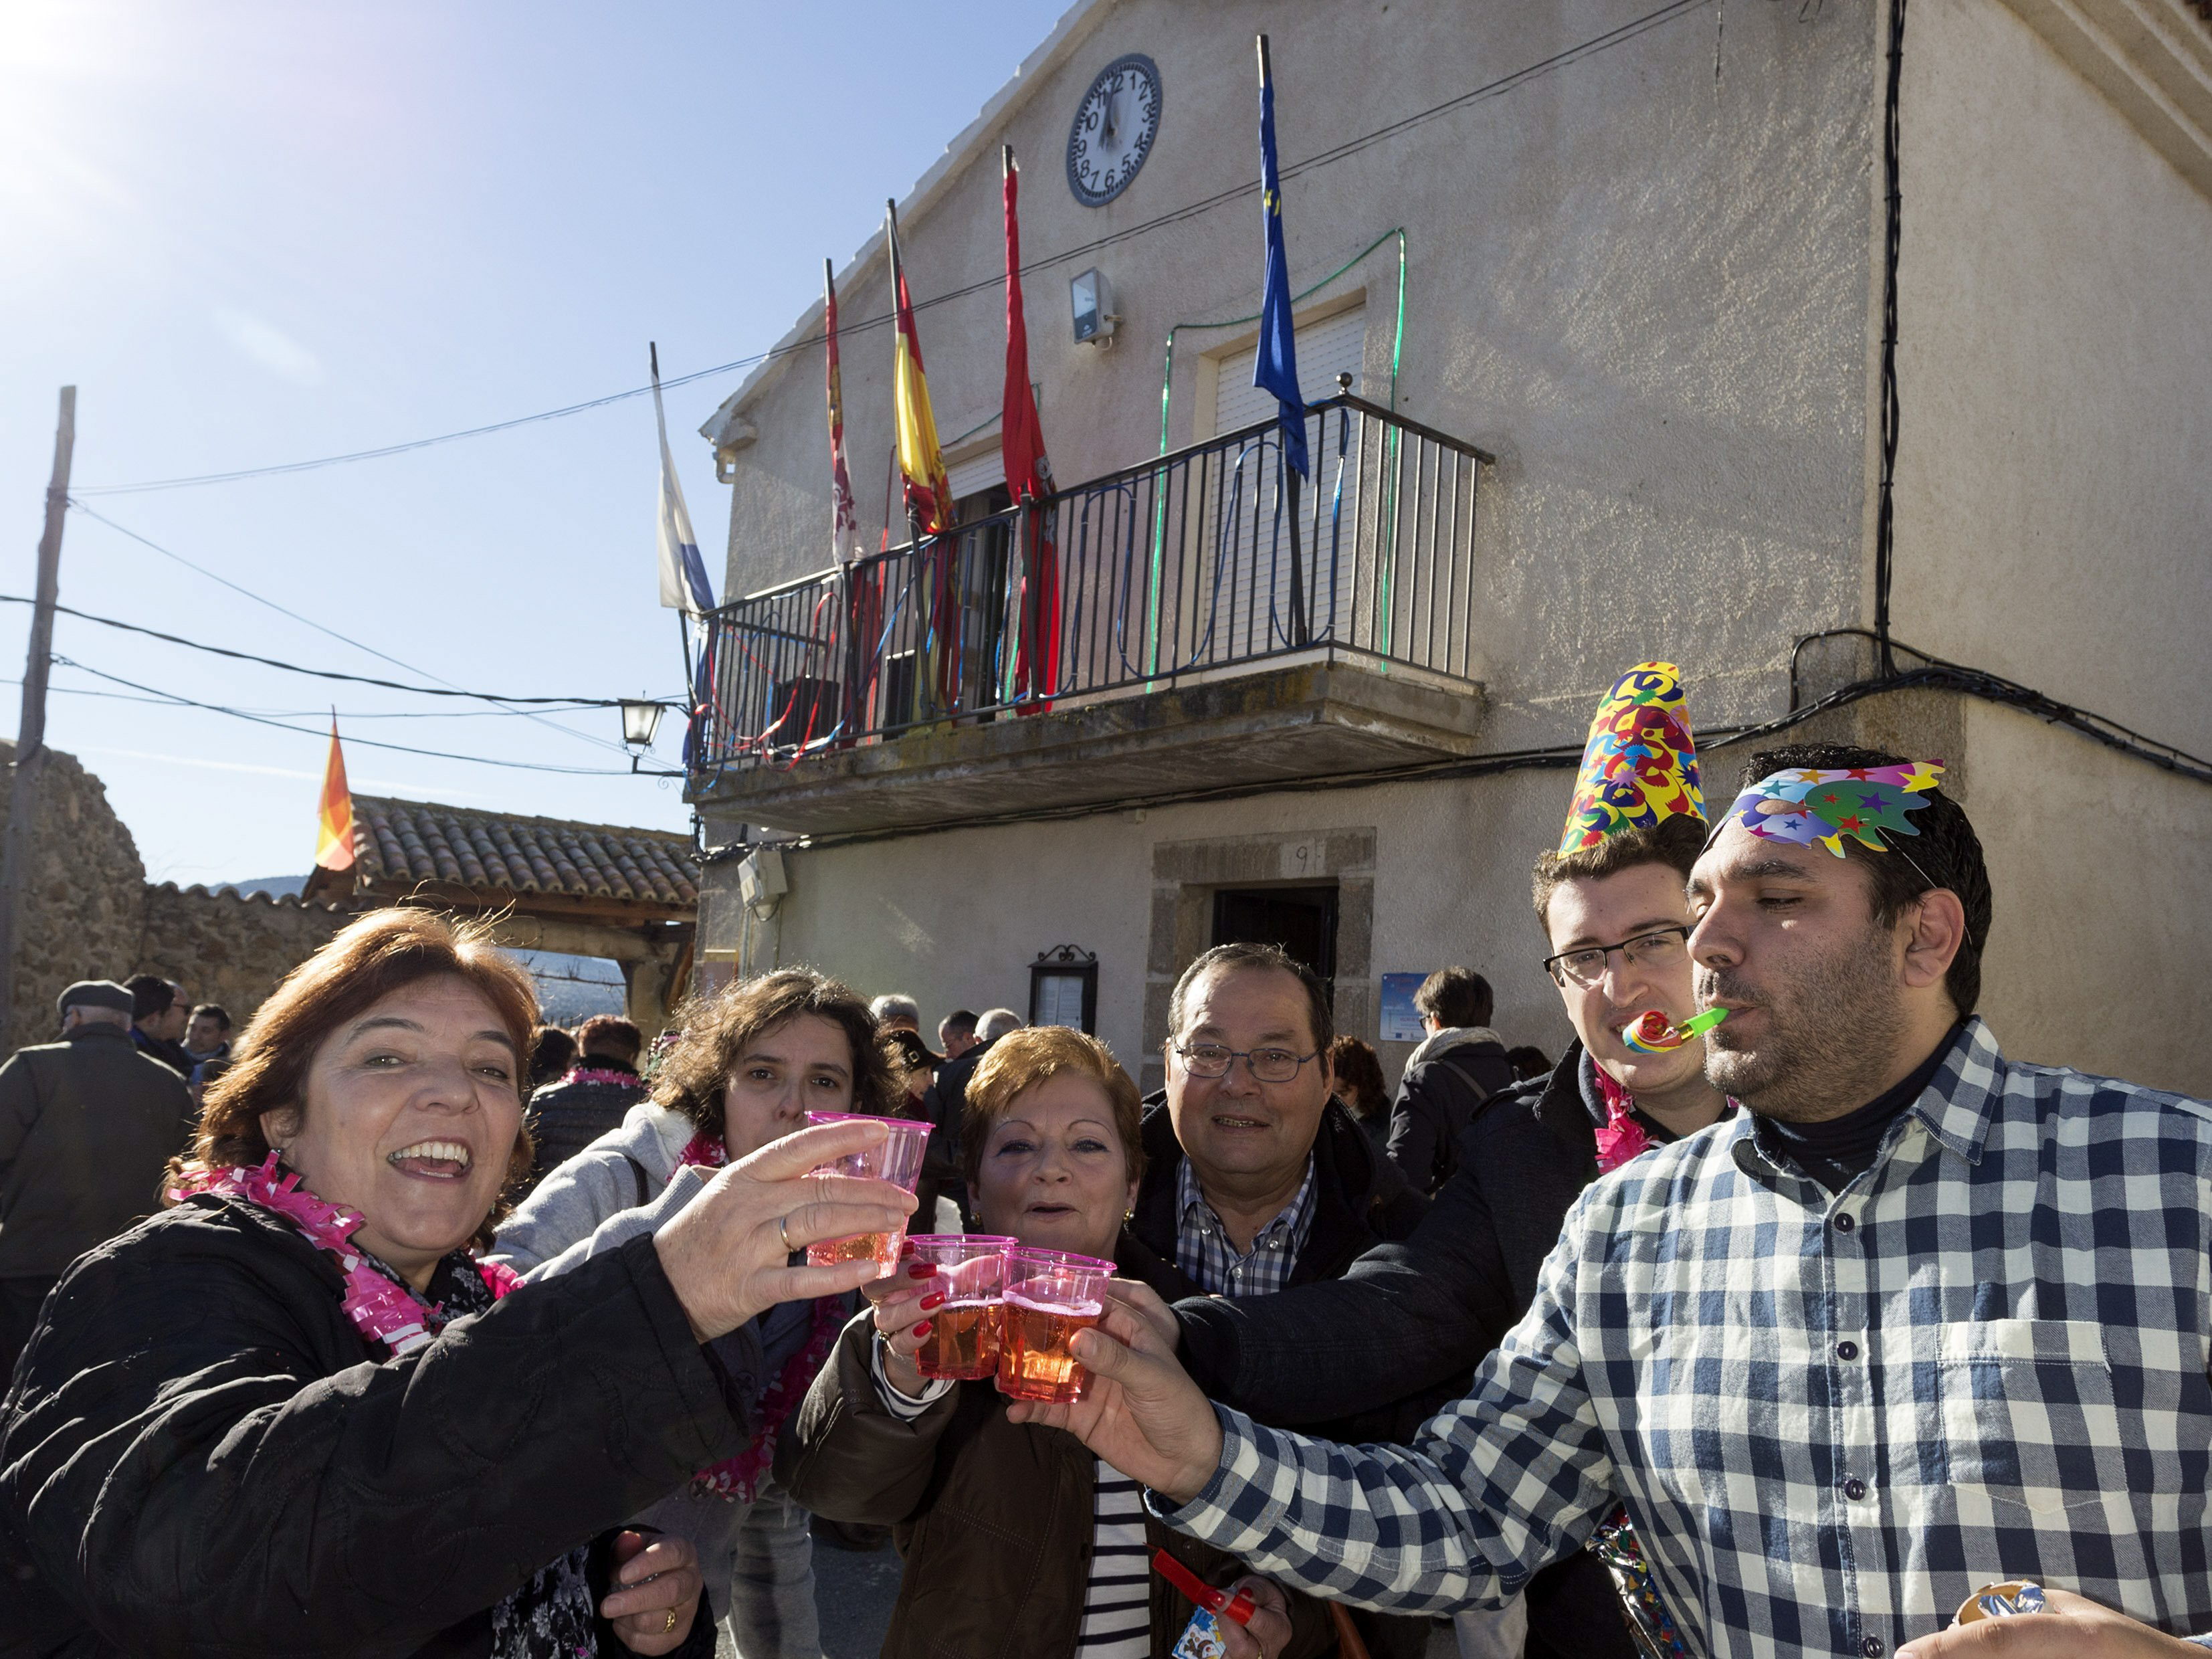 La tercera edad adelanta el año nuevo en Villar de Corneja, Ávila